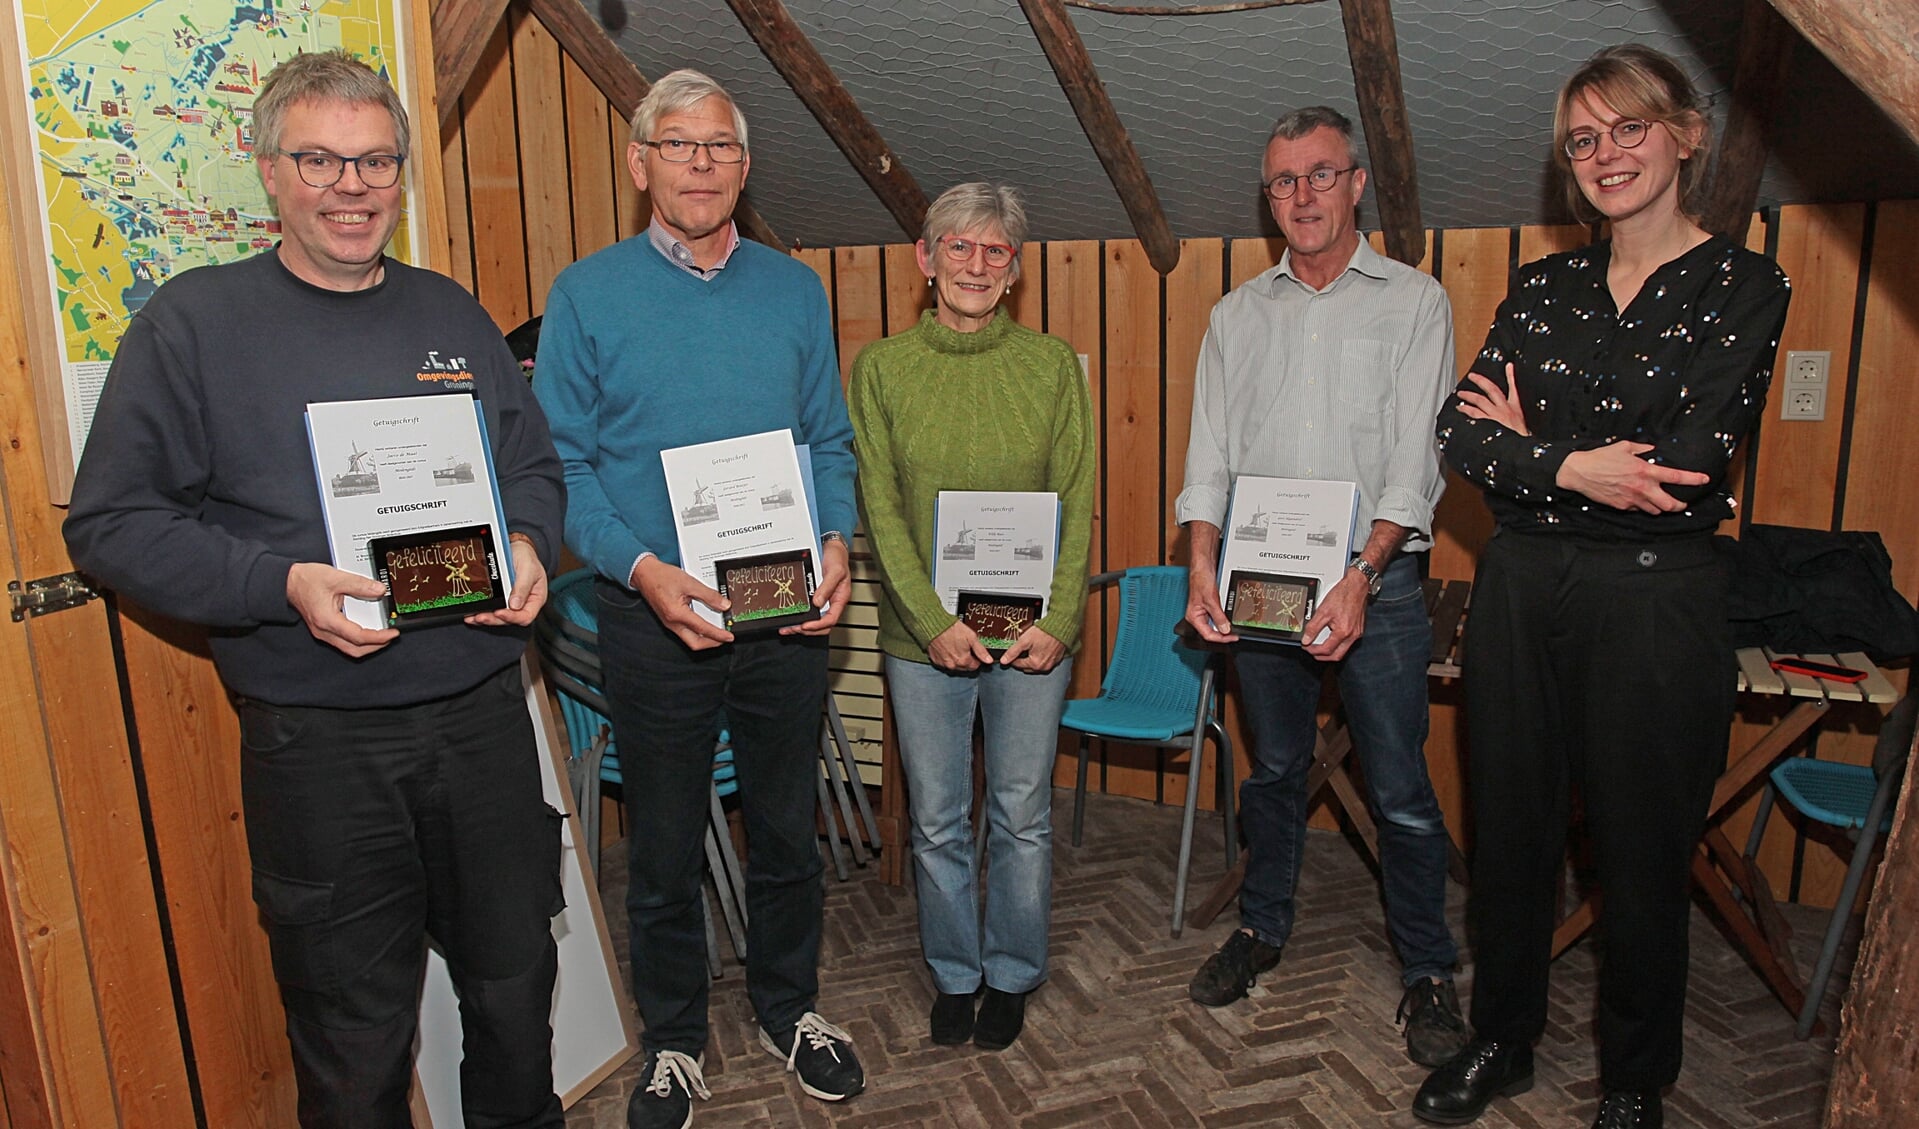 De molengidsen die hun certificaten ontvingen uit handen van Marjan Brouwer met vanaf links Jacco de Maat, Gerard Bontjer, Willy Baas, Gert Hogendorf. Jan Wehrmeijer ontbreekt op de foto. Foto: Bert Woltjes.   